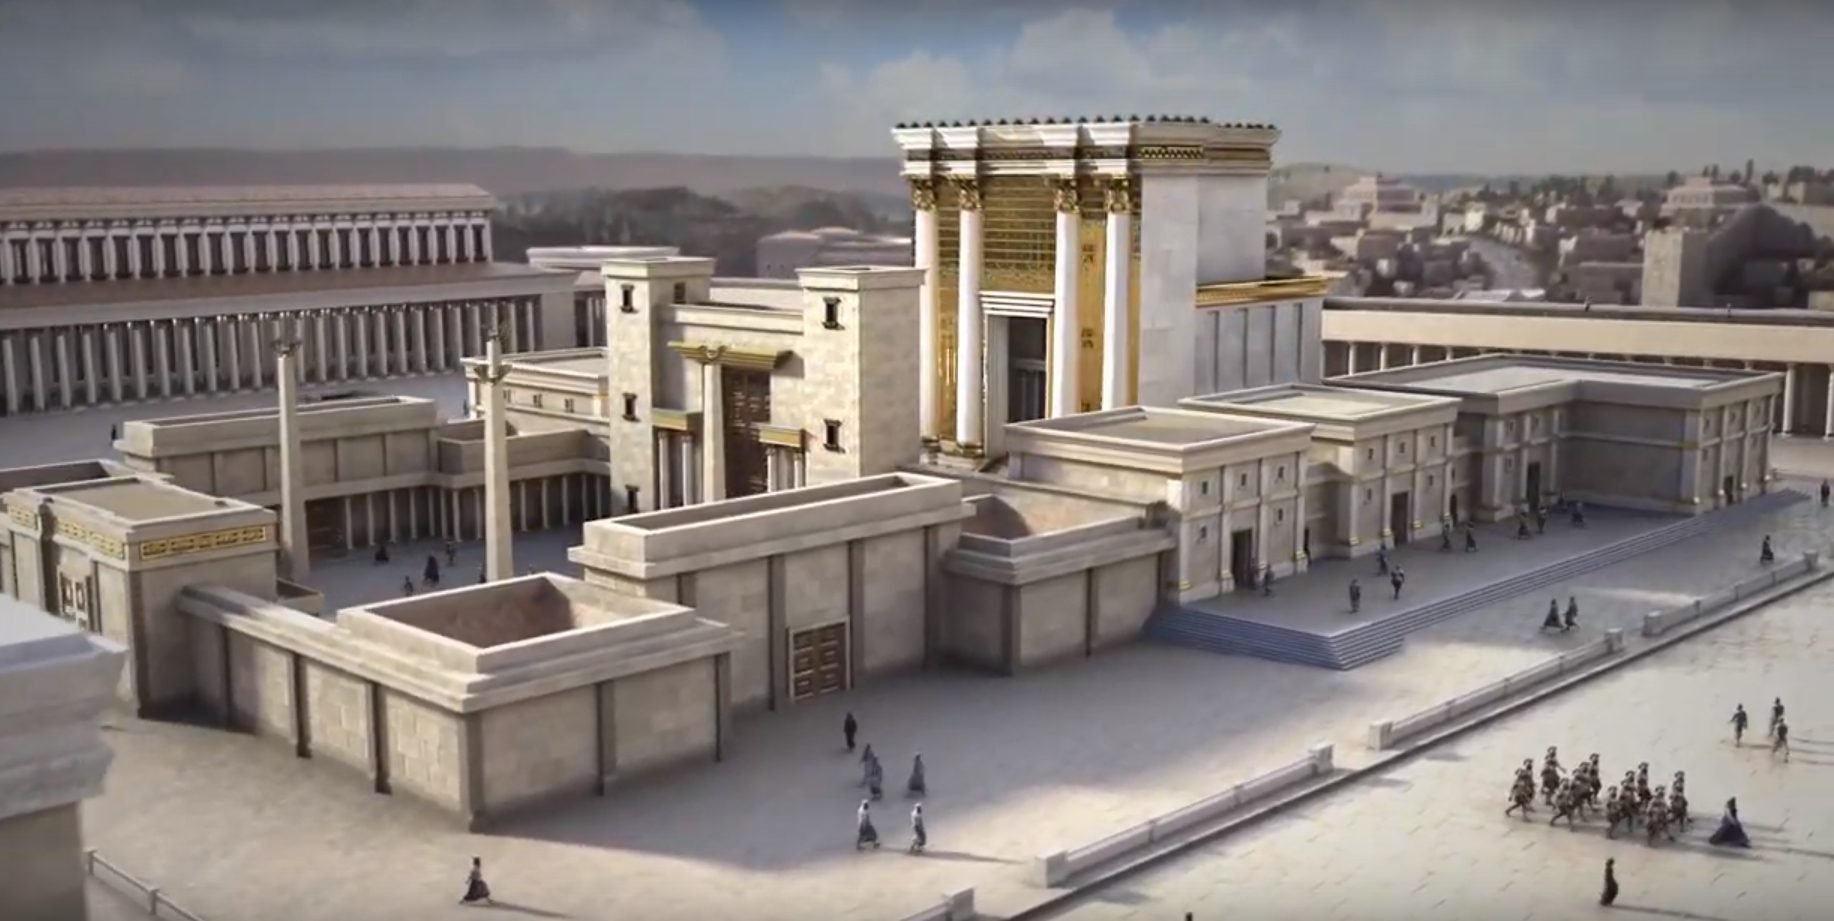 בית המקדש מתעורר לחיים: סיור מציאות מדומה בבית המקדש השני